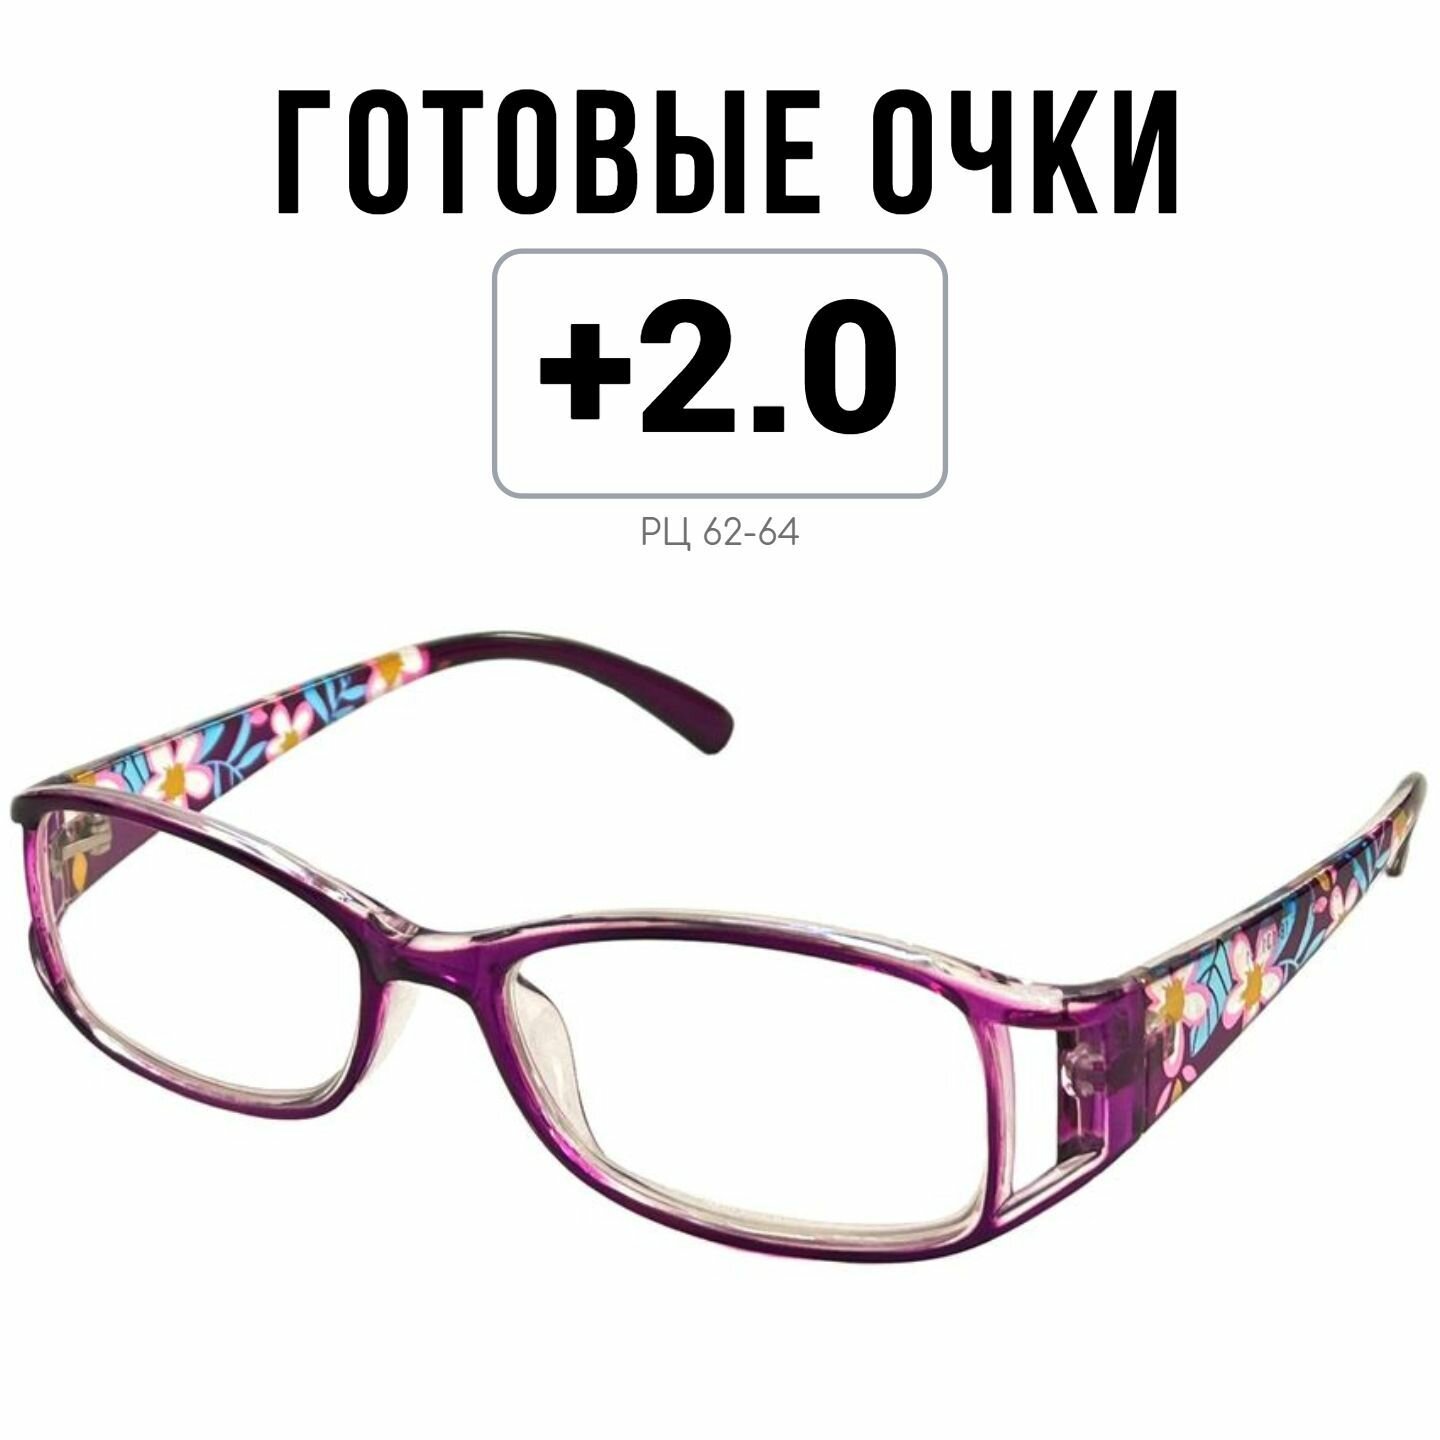 Готовые очки для зрения MOCT с диоптриями +2.0 женские корригирующие для чтения